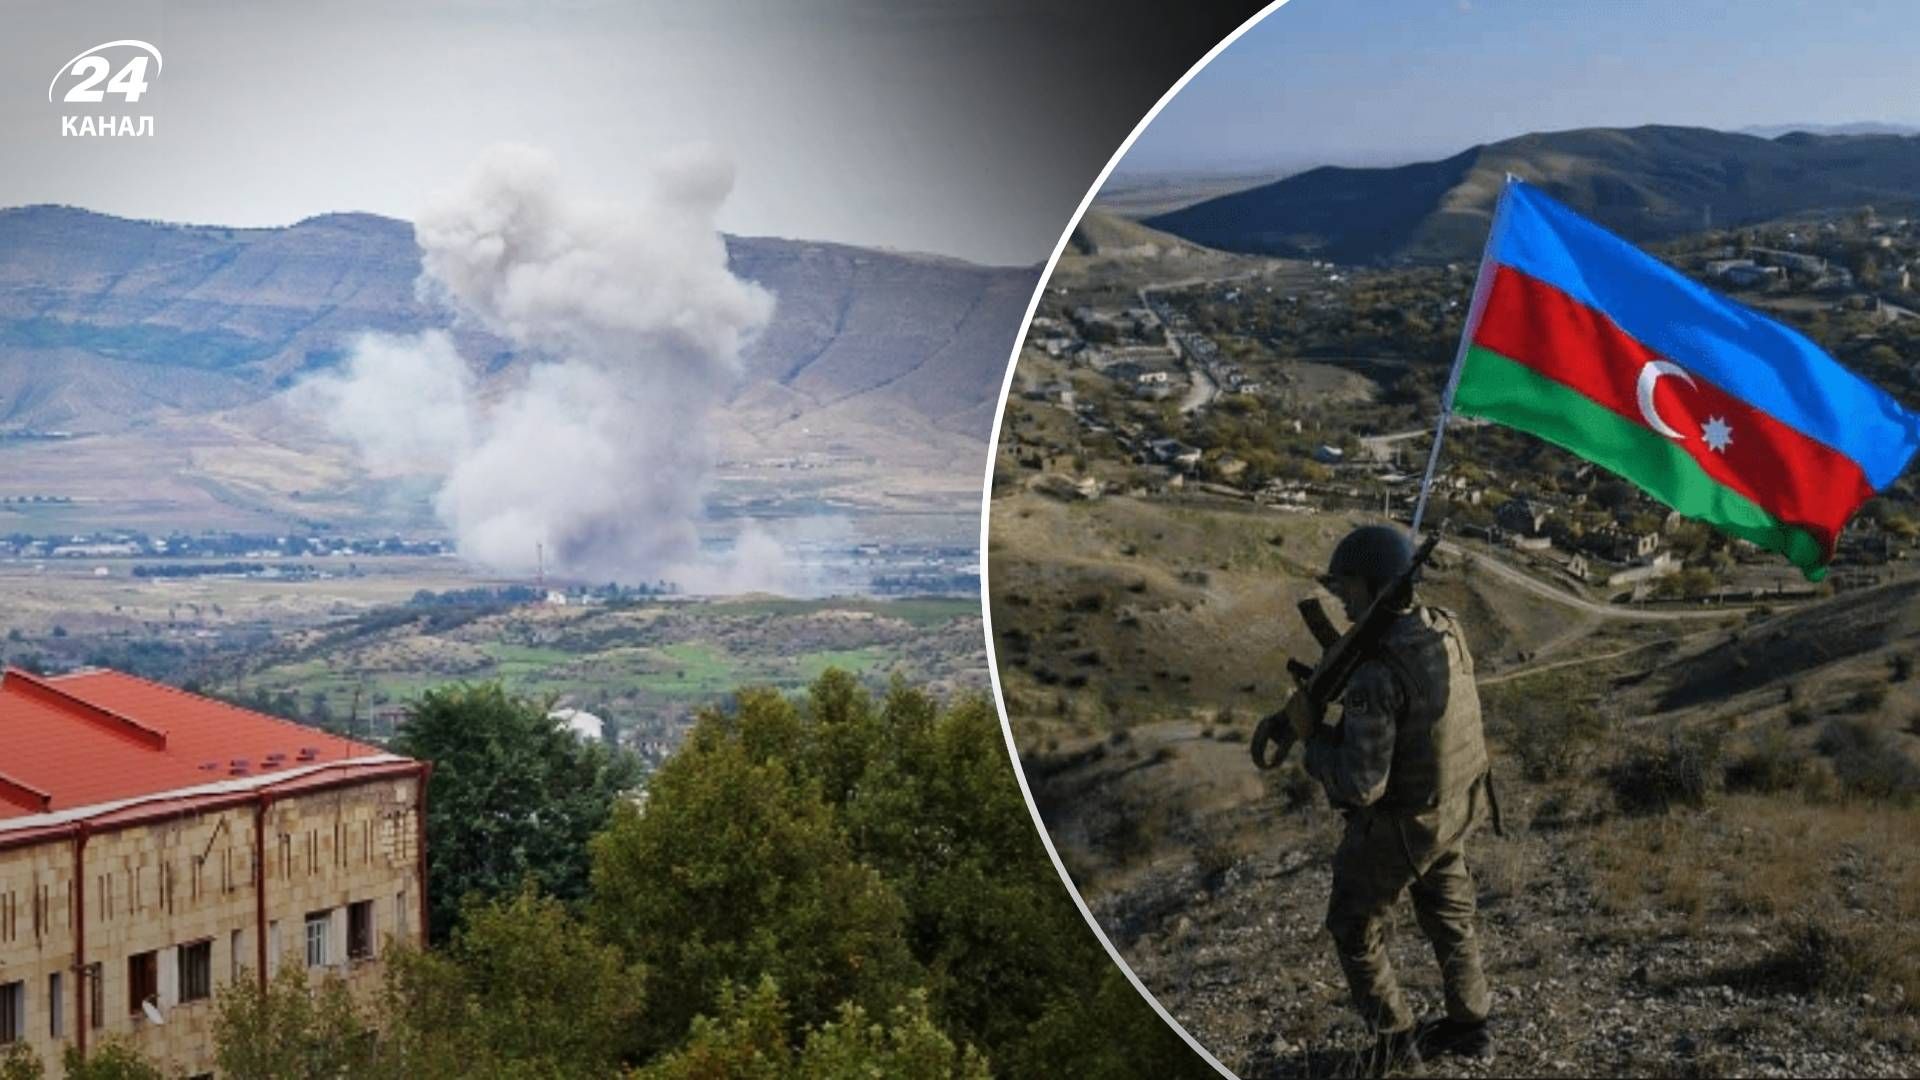 Нагірний Карабах війна - як розгортатимиться ситуація щодо Нагірного Карабаху